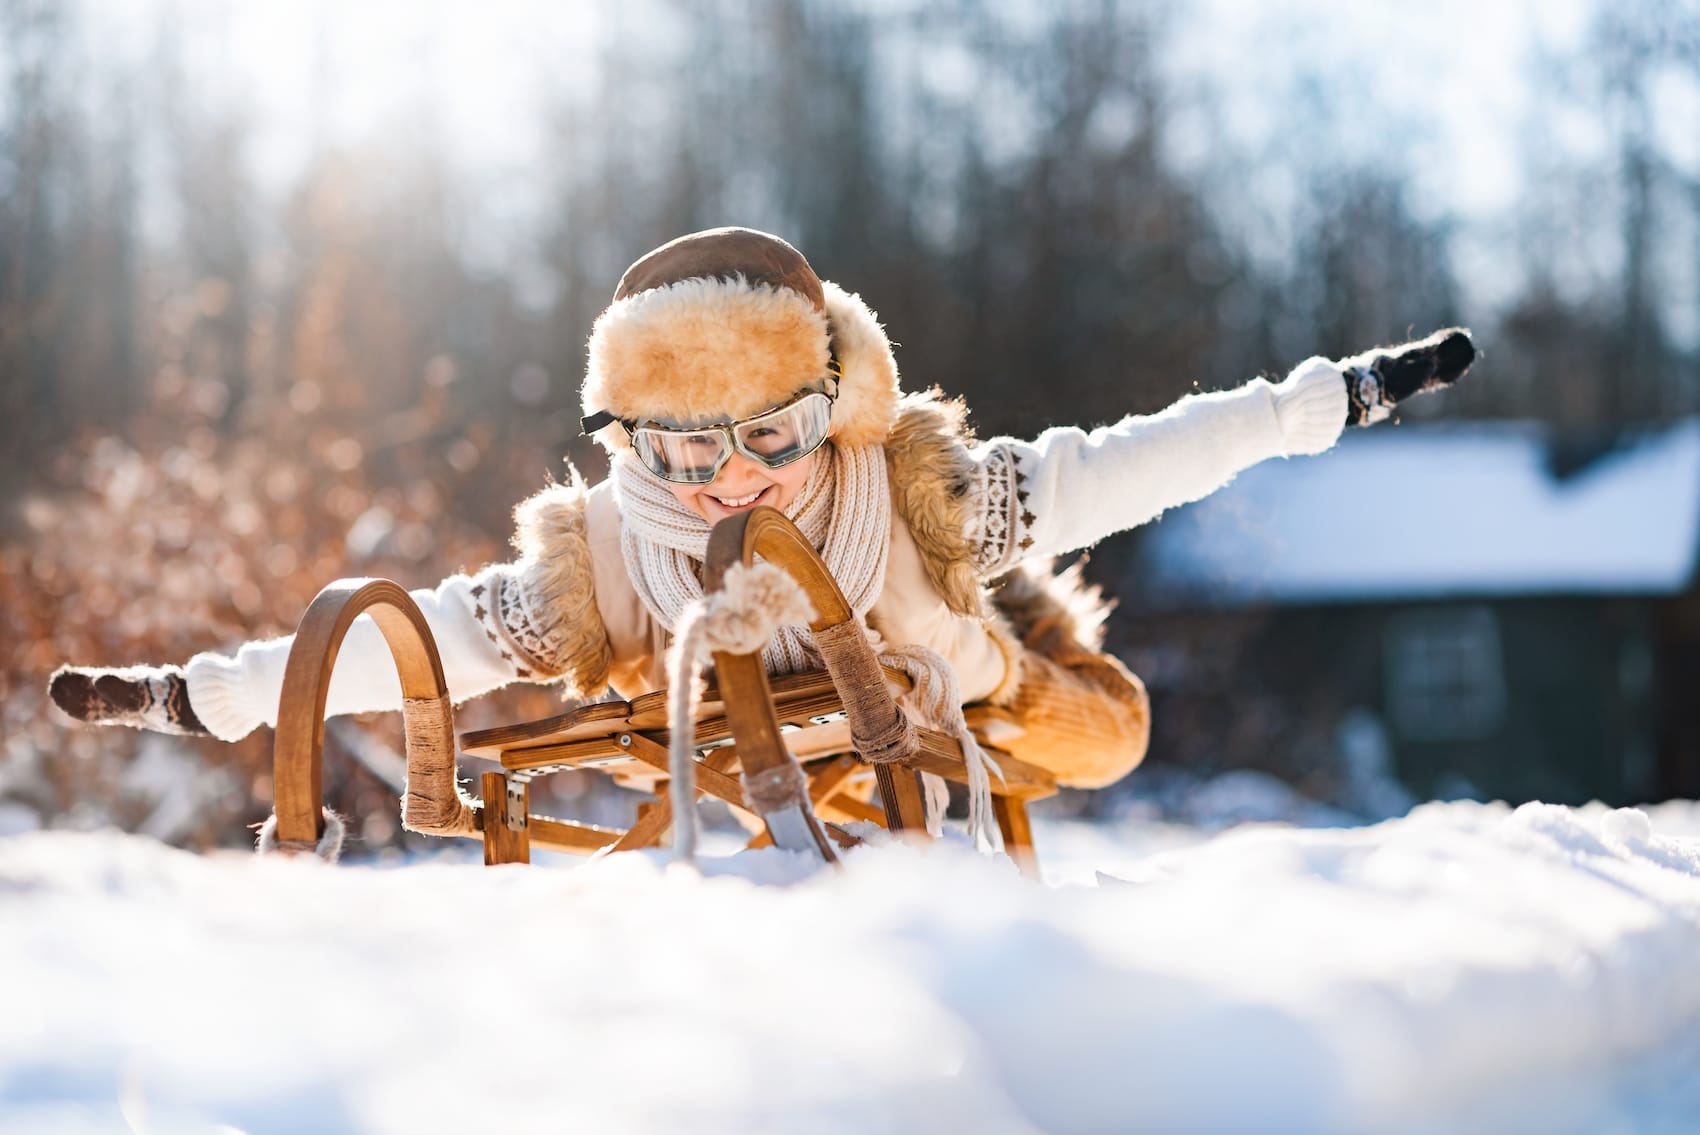 Lustiges kleines Kind fährt auf Schlitten im Schnee. Aktive Sportspiele in der Winterzeit.